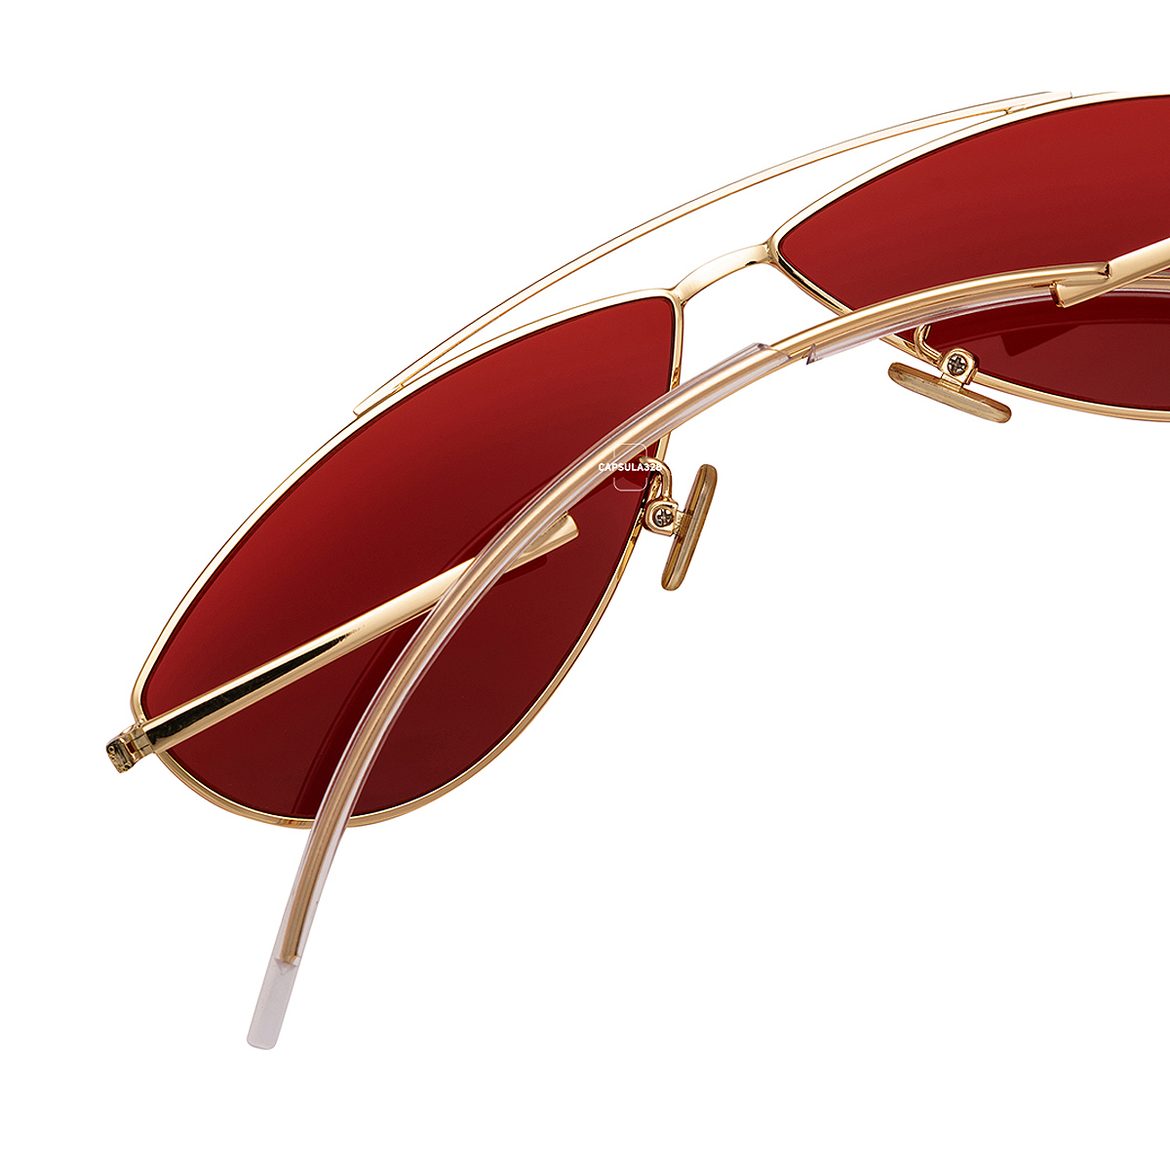 Солнцезащитные очки Petal 8301